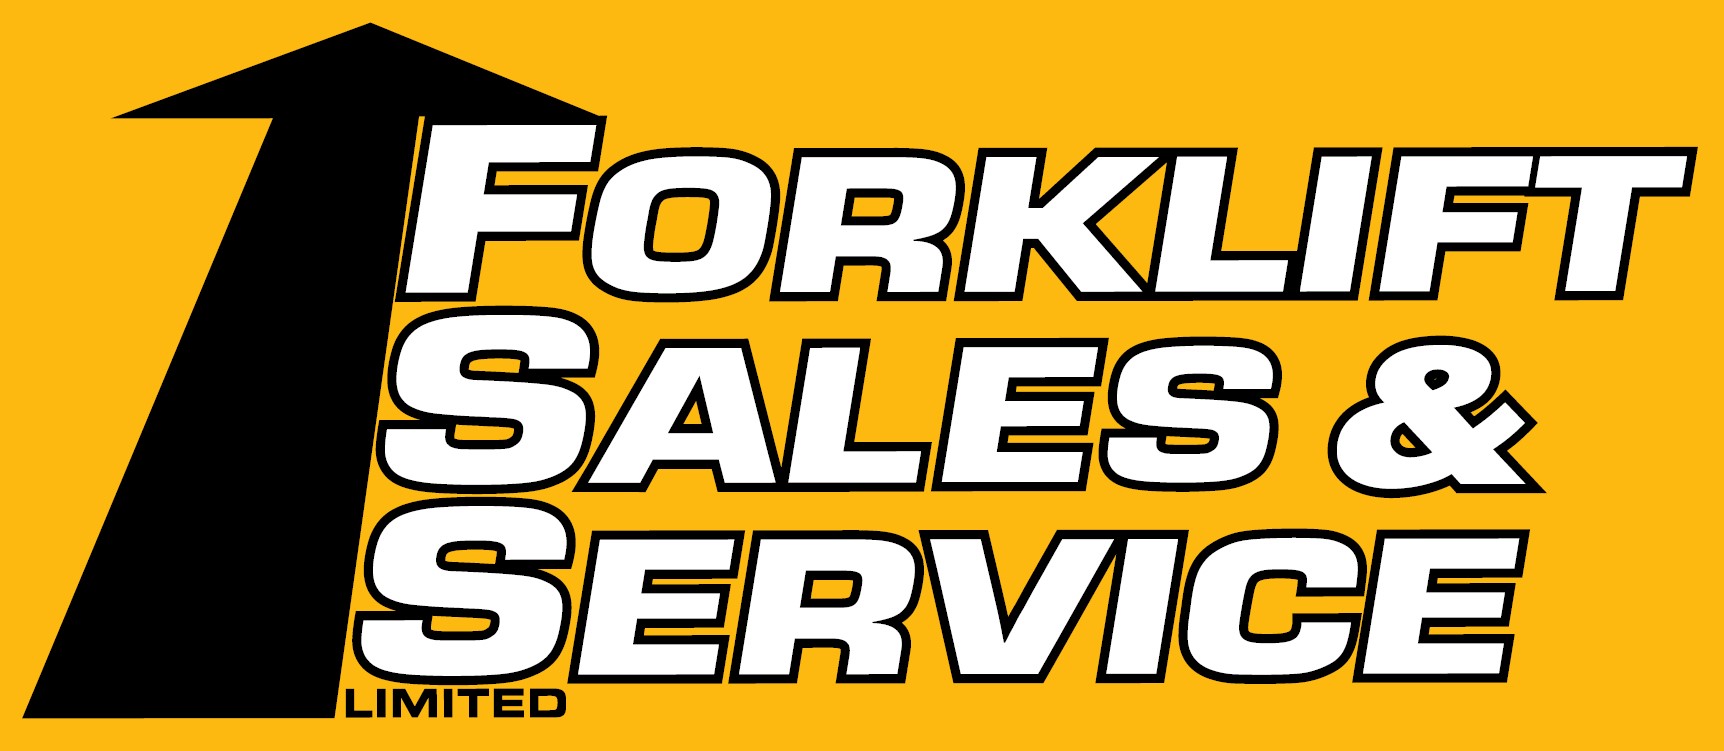 Forklift sales & services